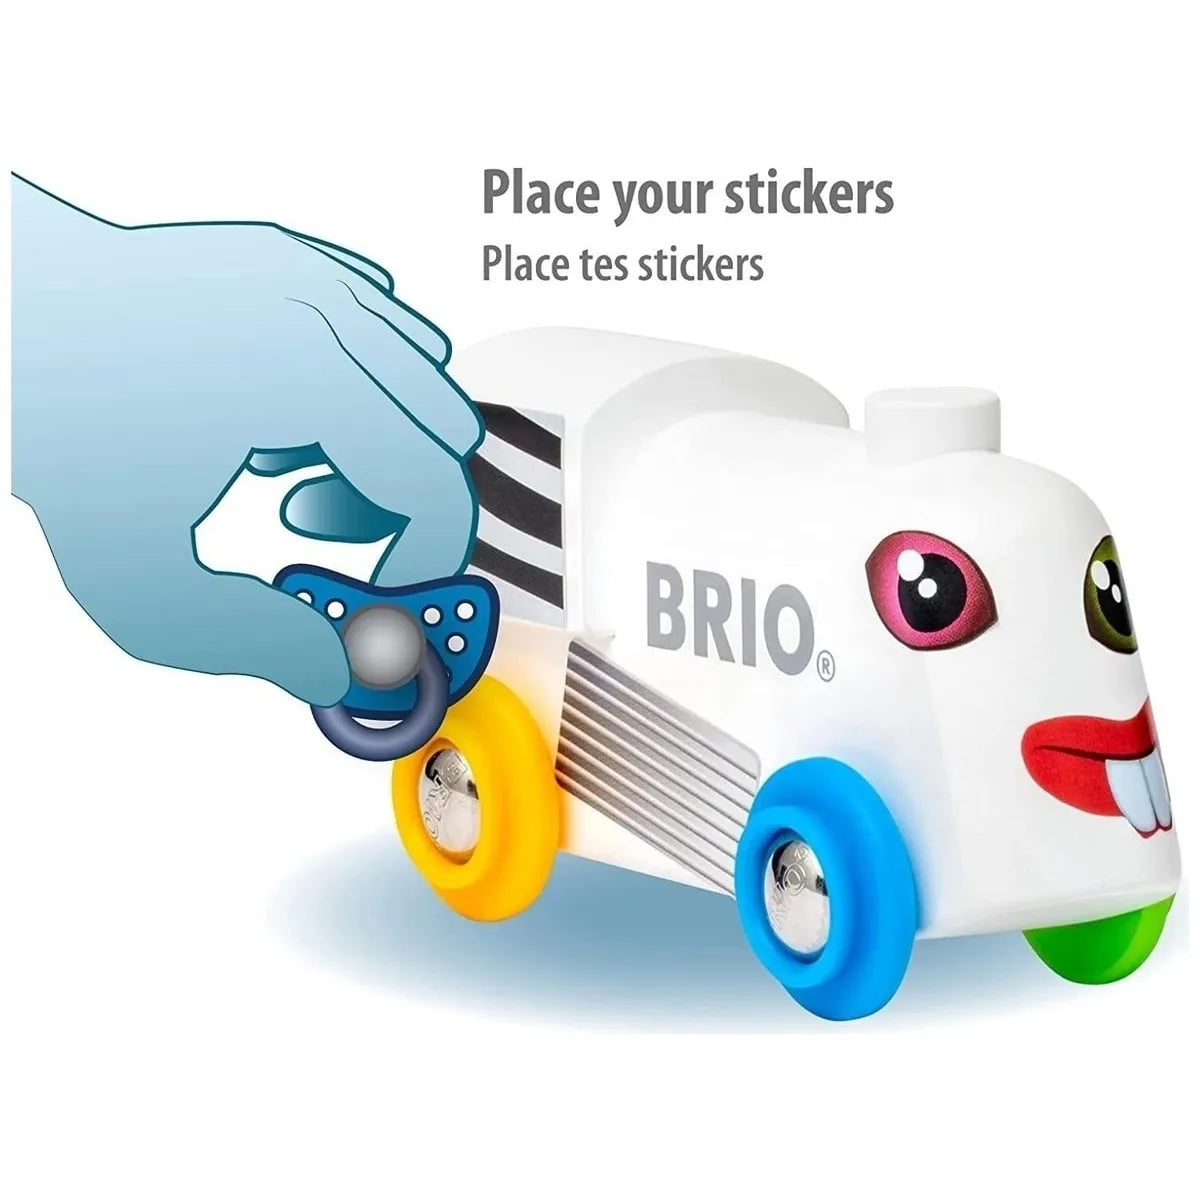 Brio Stickerlı Tren 33979 | Toysall